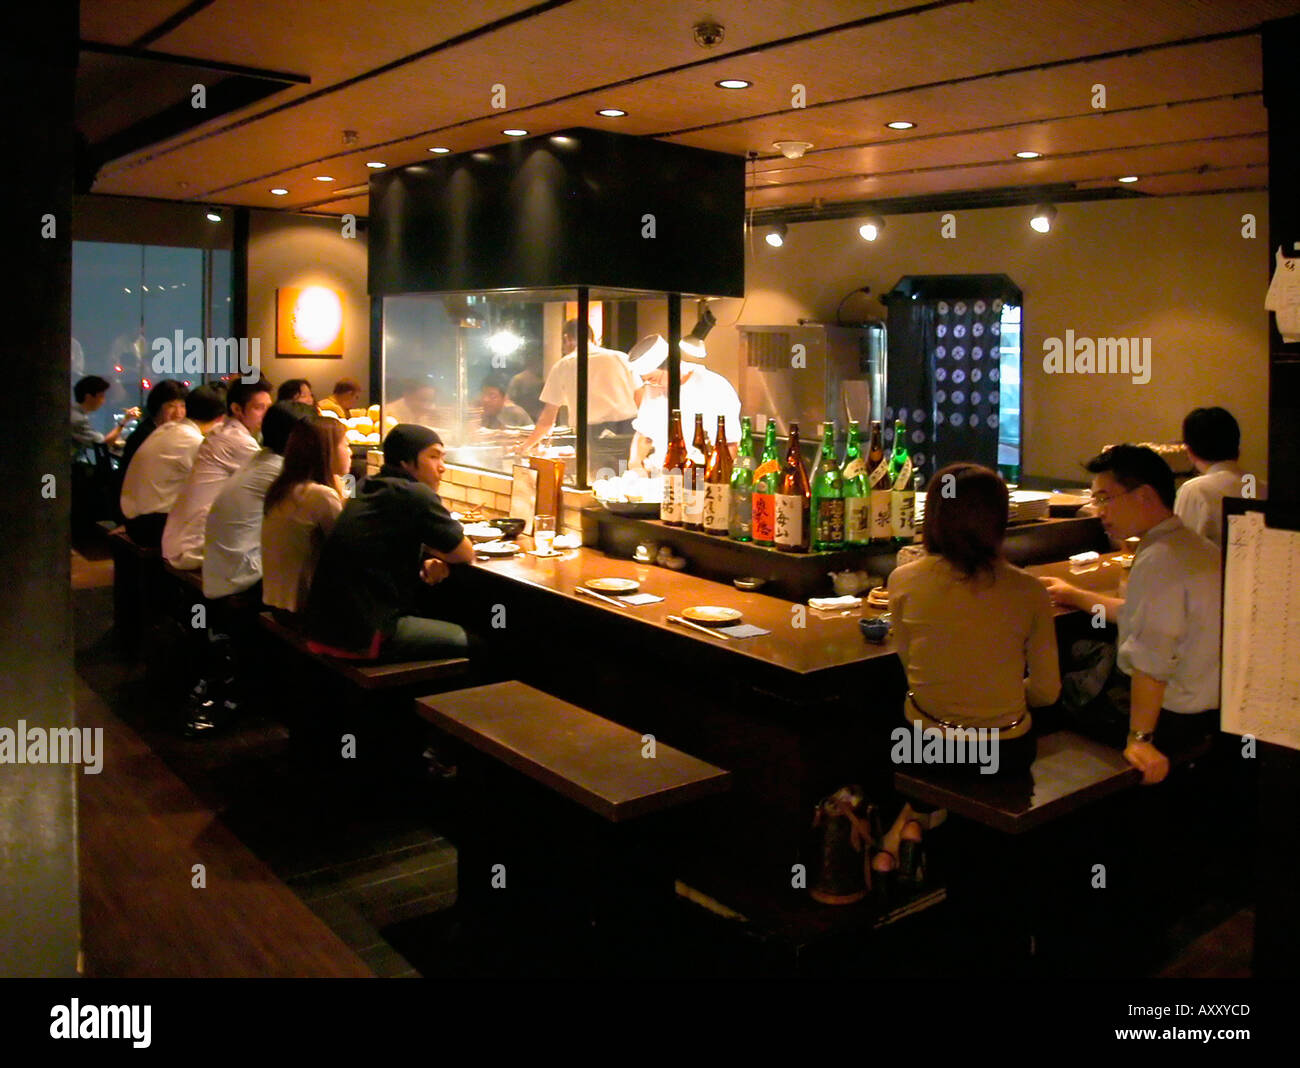 Diners and Sake bottle display in Ku izakaya restaurant Shinjuku Tokyo Japan Stock Photo